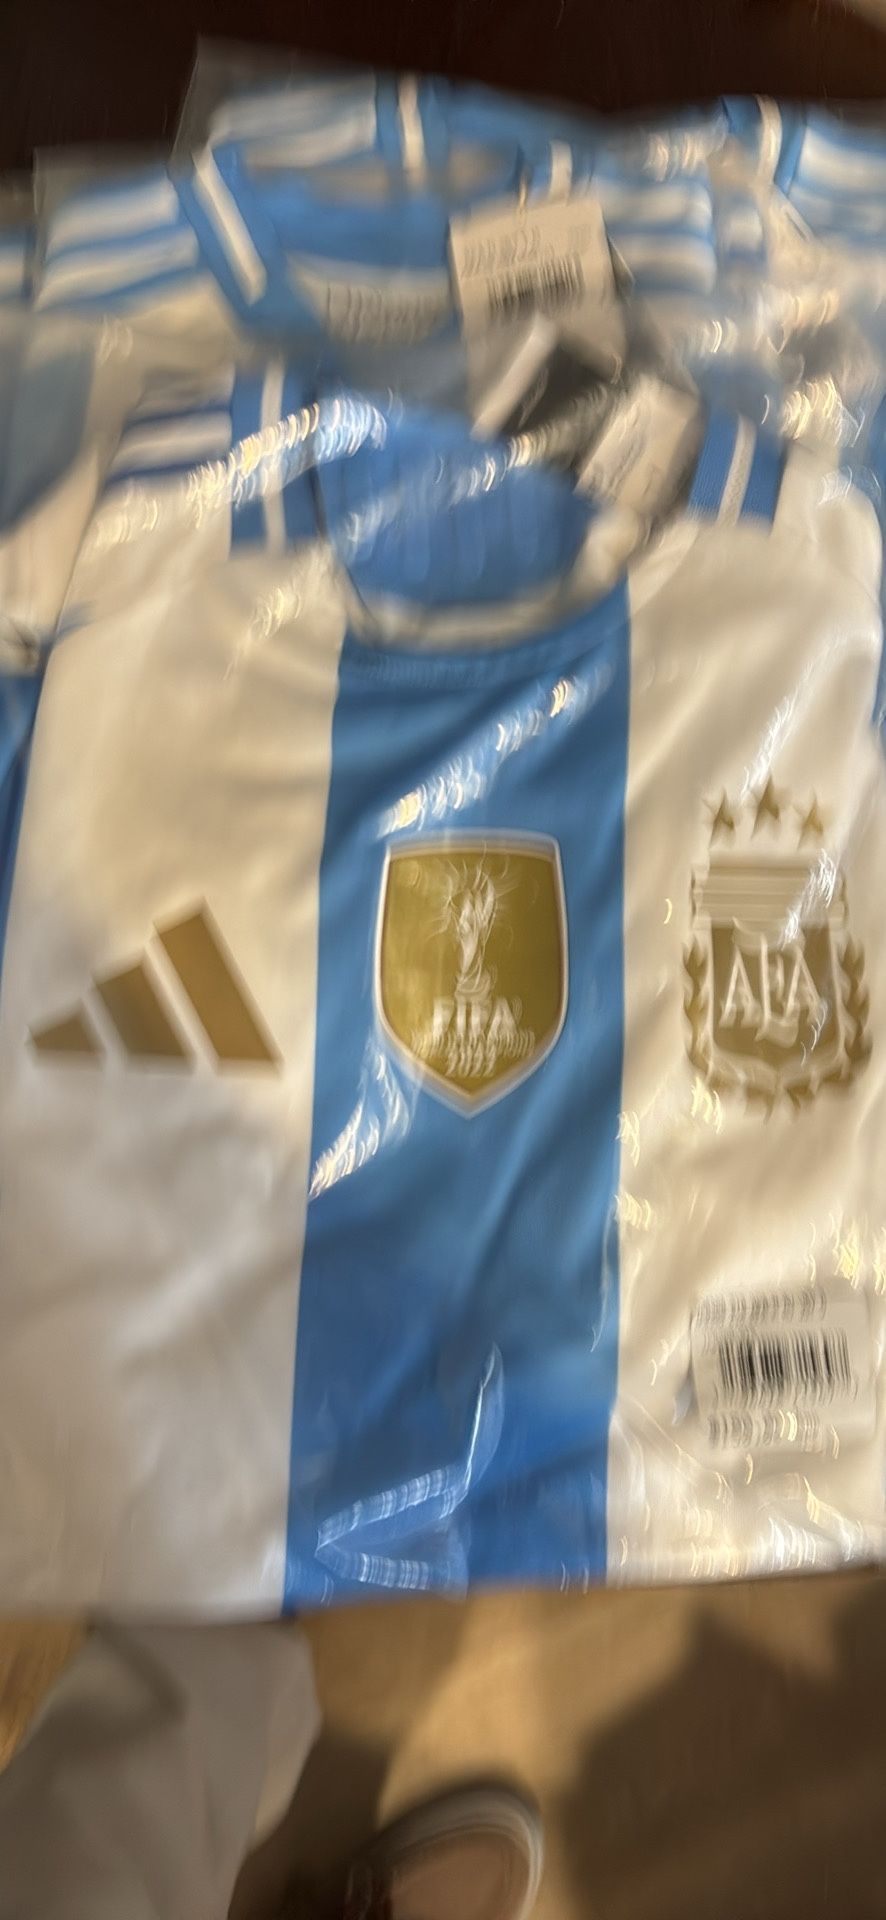 Argentina Soccer Jerseys 